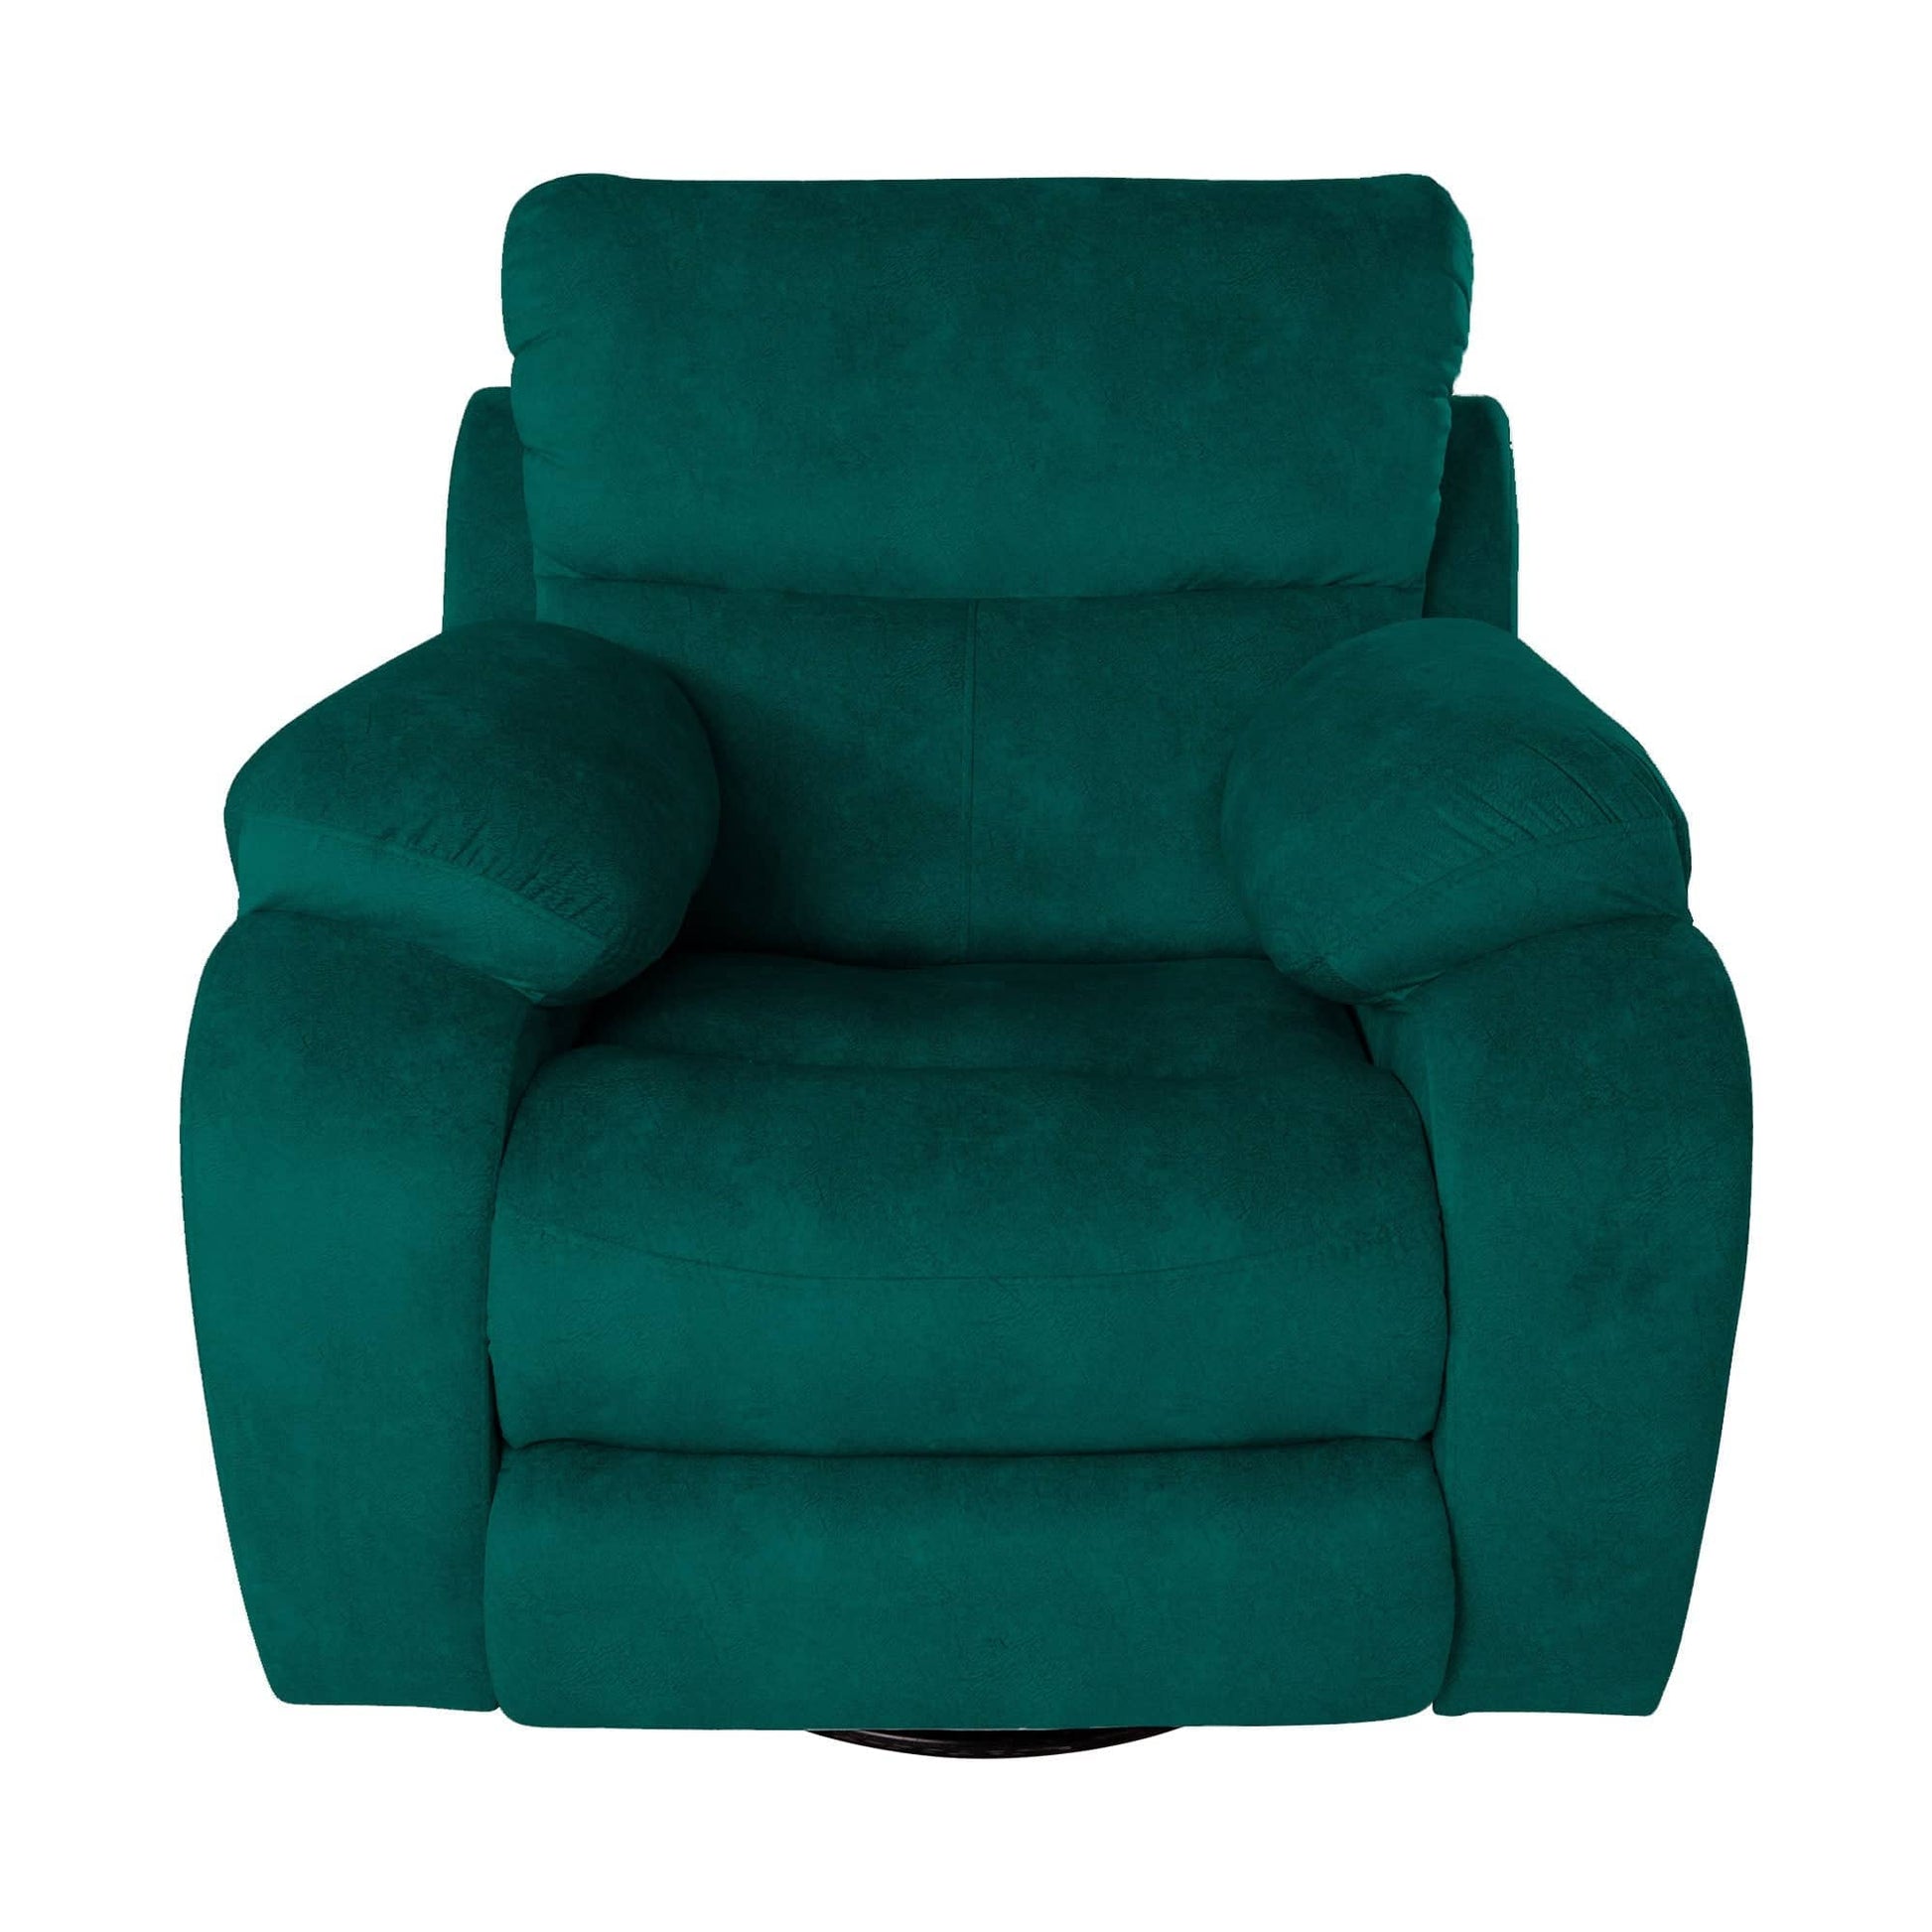 كرسي ليزي بوي استرخاء بألوان متعددة - ALD2-homznia